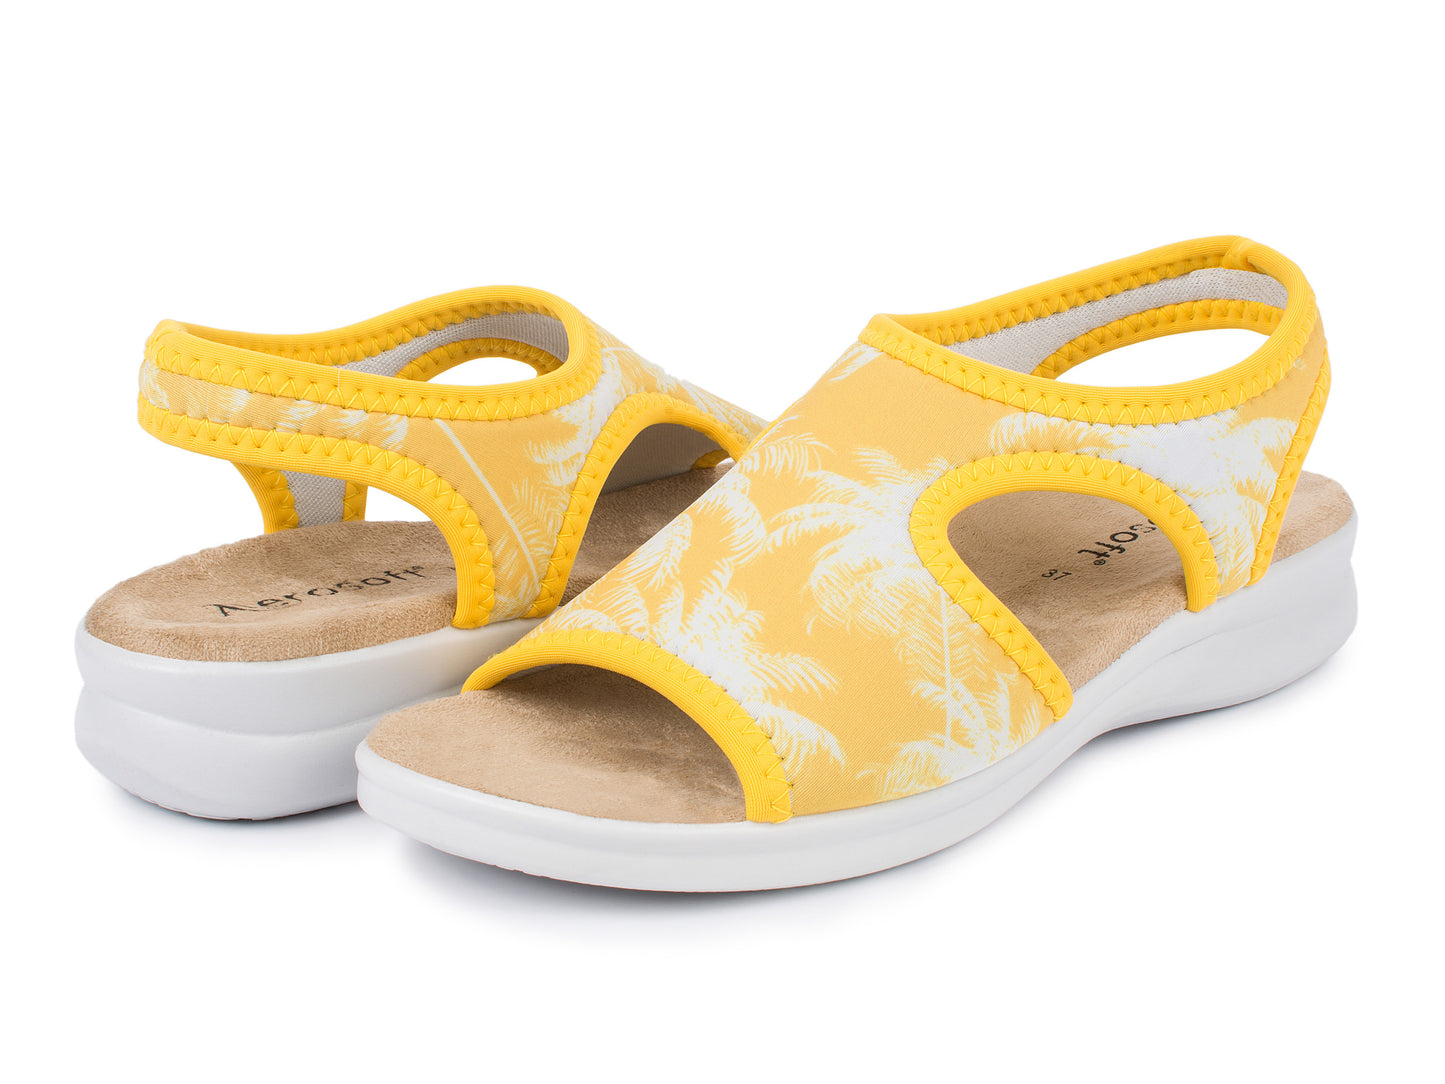 Damen Stretch Sandalette Modell Stretch 05 von Aerosoft in der Farbe Palme gelb als Schuh-Paar Ansicht